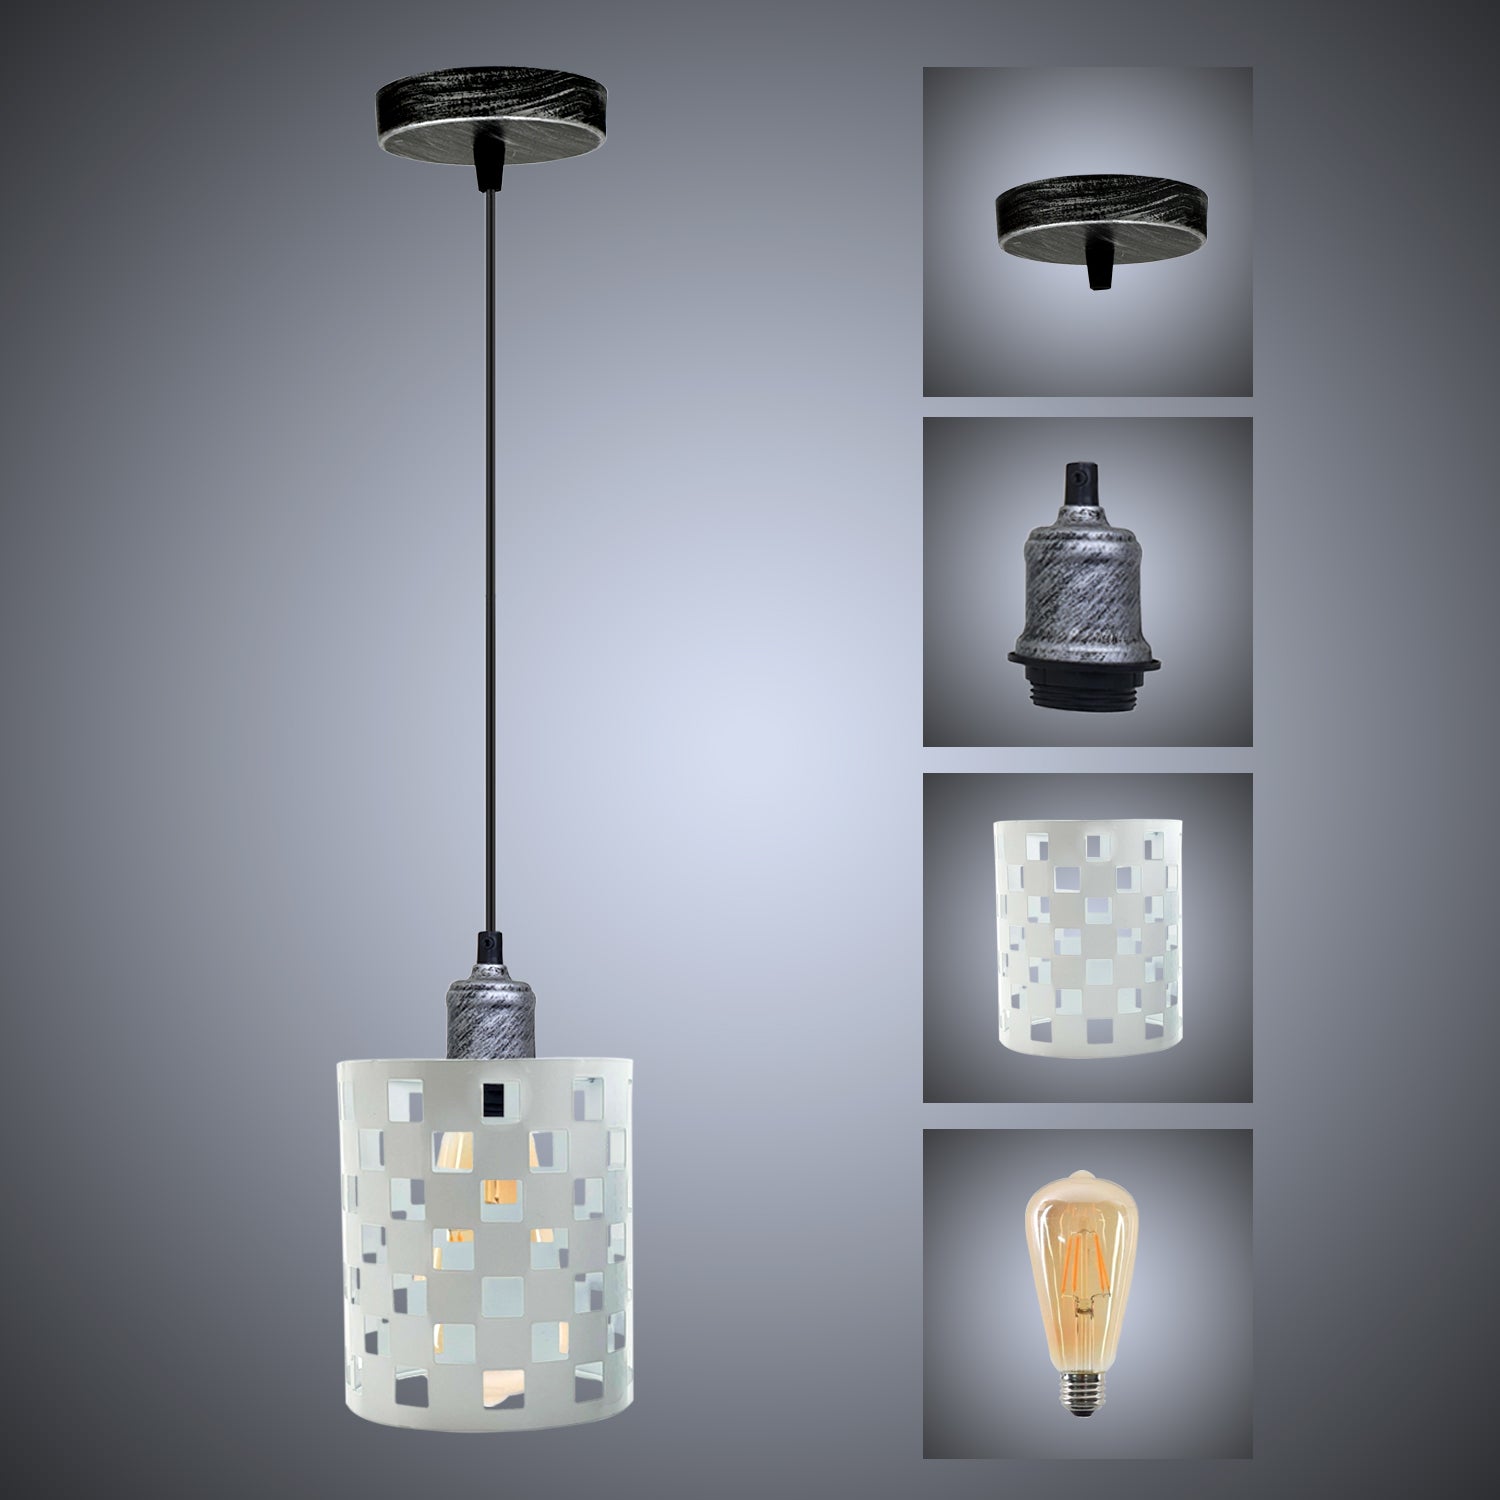 Modern vintage Pendant Hanging Ceiling Lamp Shade Industrial Retro Vintage Light~3431 - LEDSone UK Ltd